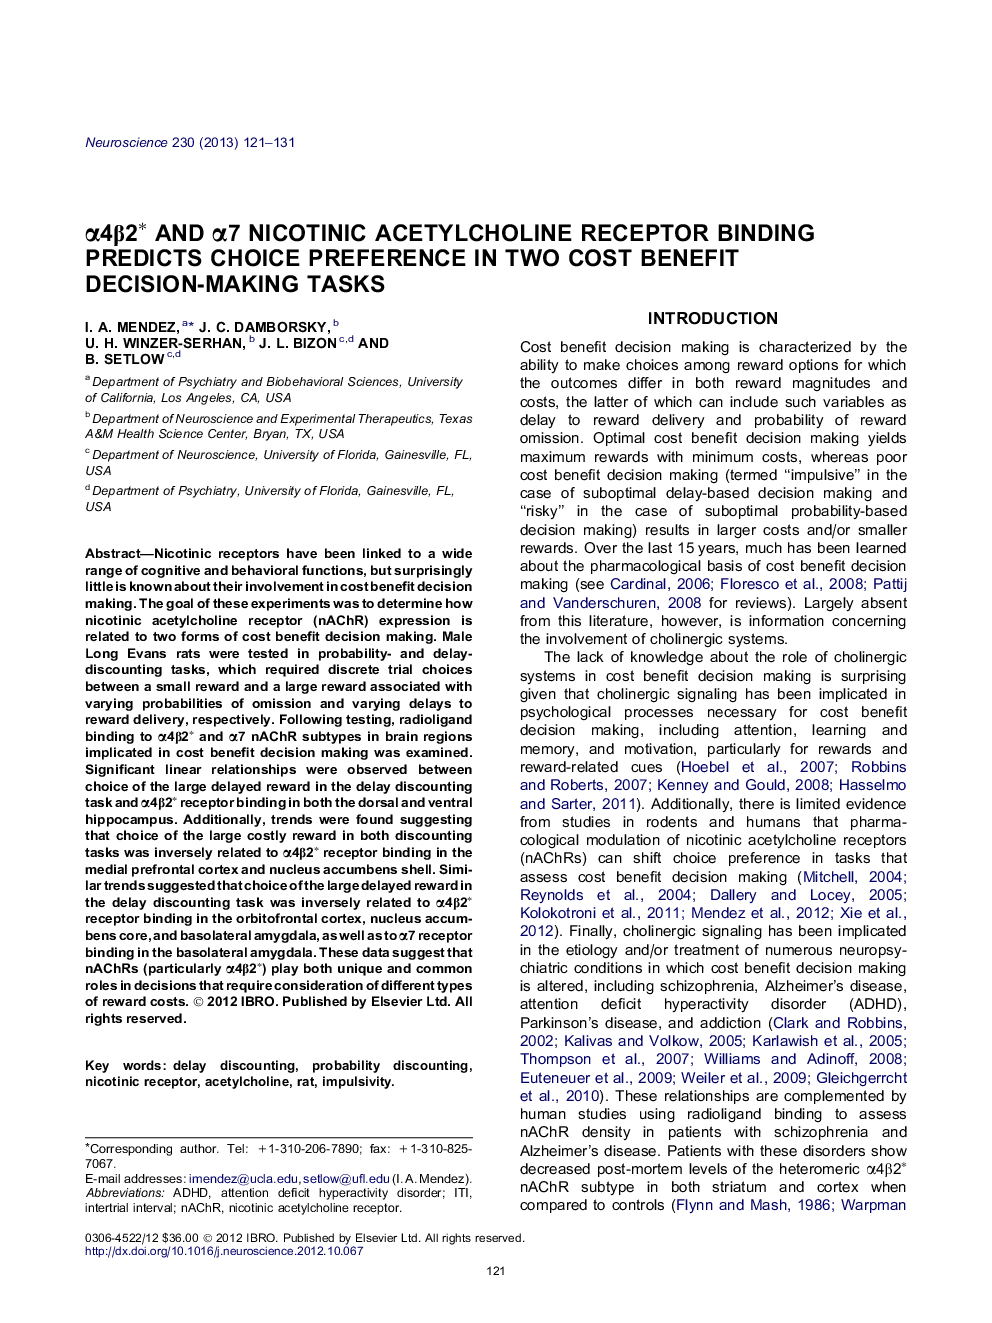 α4β2∗ and α7 nicotinic acetylcholine receptor binding predicts choice preference in two cost benefit decision-making tasks